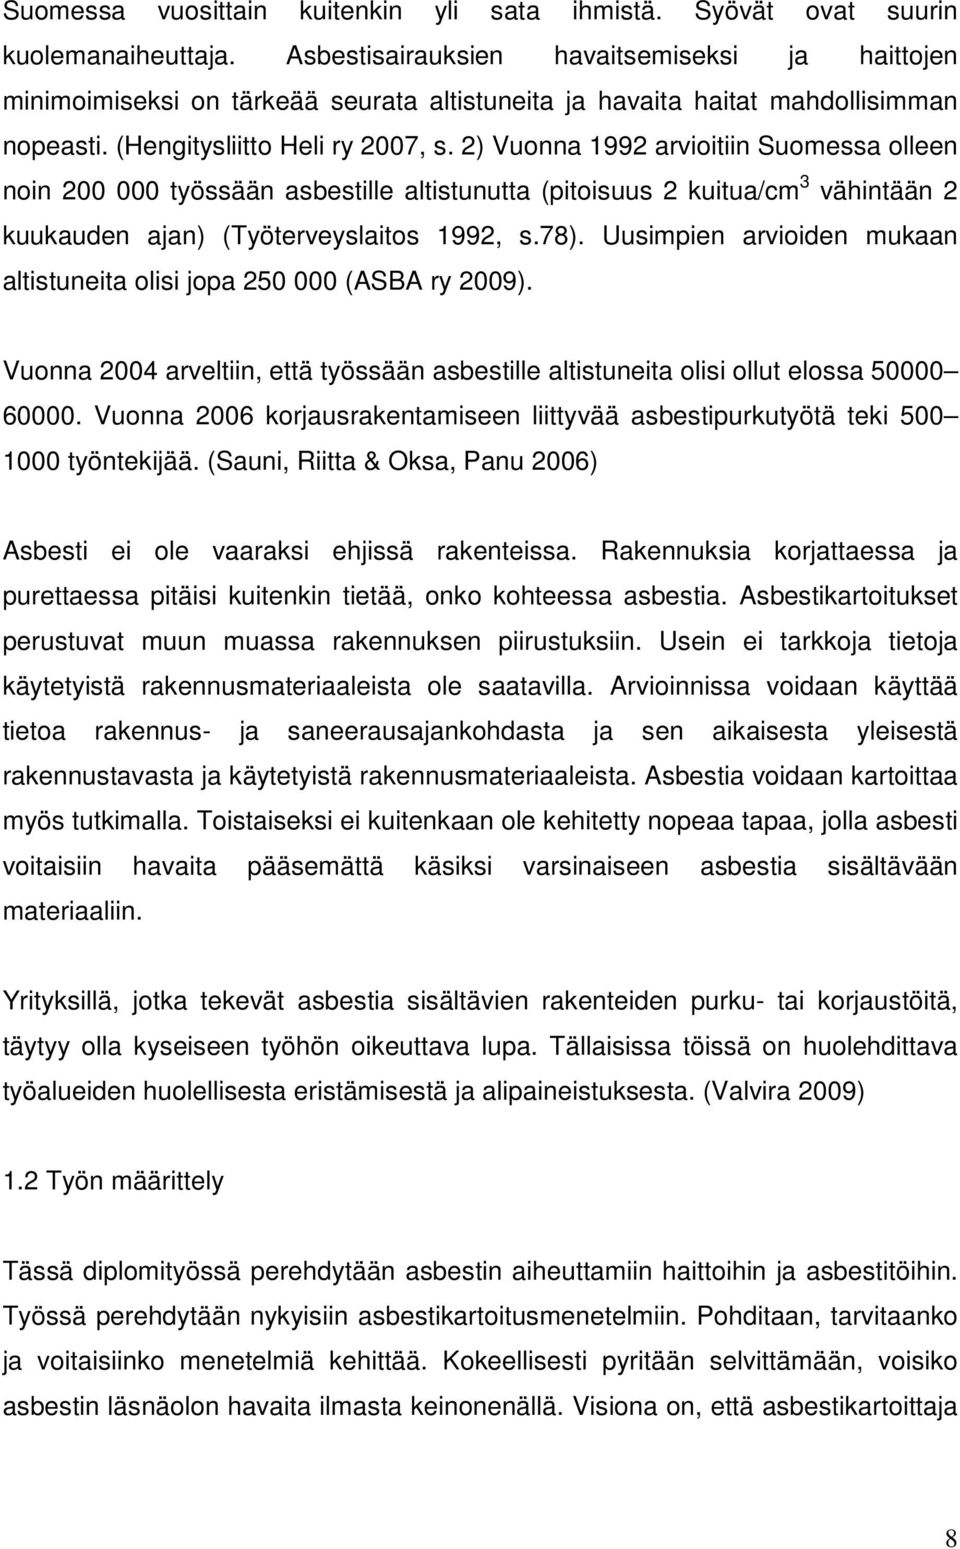 2) Vuonna 1992 arvioitiin Suomessa olleen noin 200 000 työssään asbestille altistunutta (pitoisuus 2 kuitua/cm 3 vähintään 2 kuukauden ajan) (Työterveyslaitos 1992, s.78).